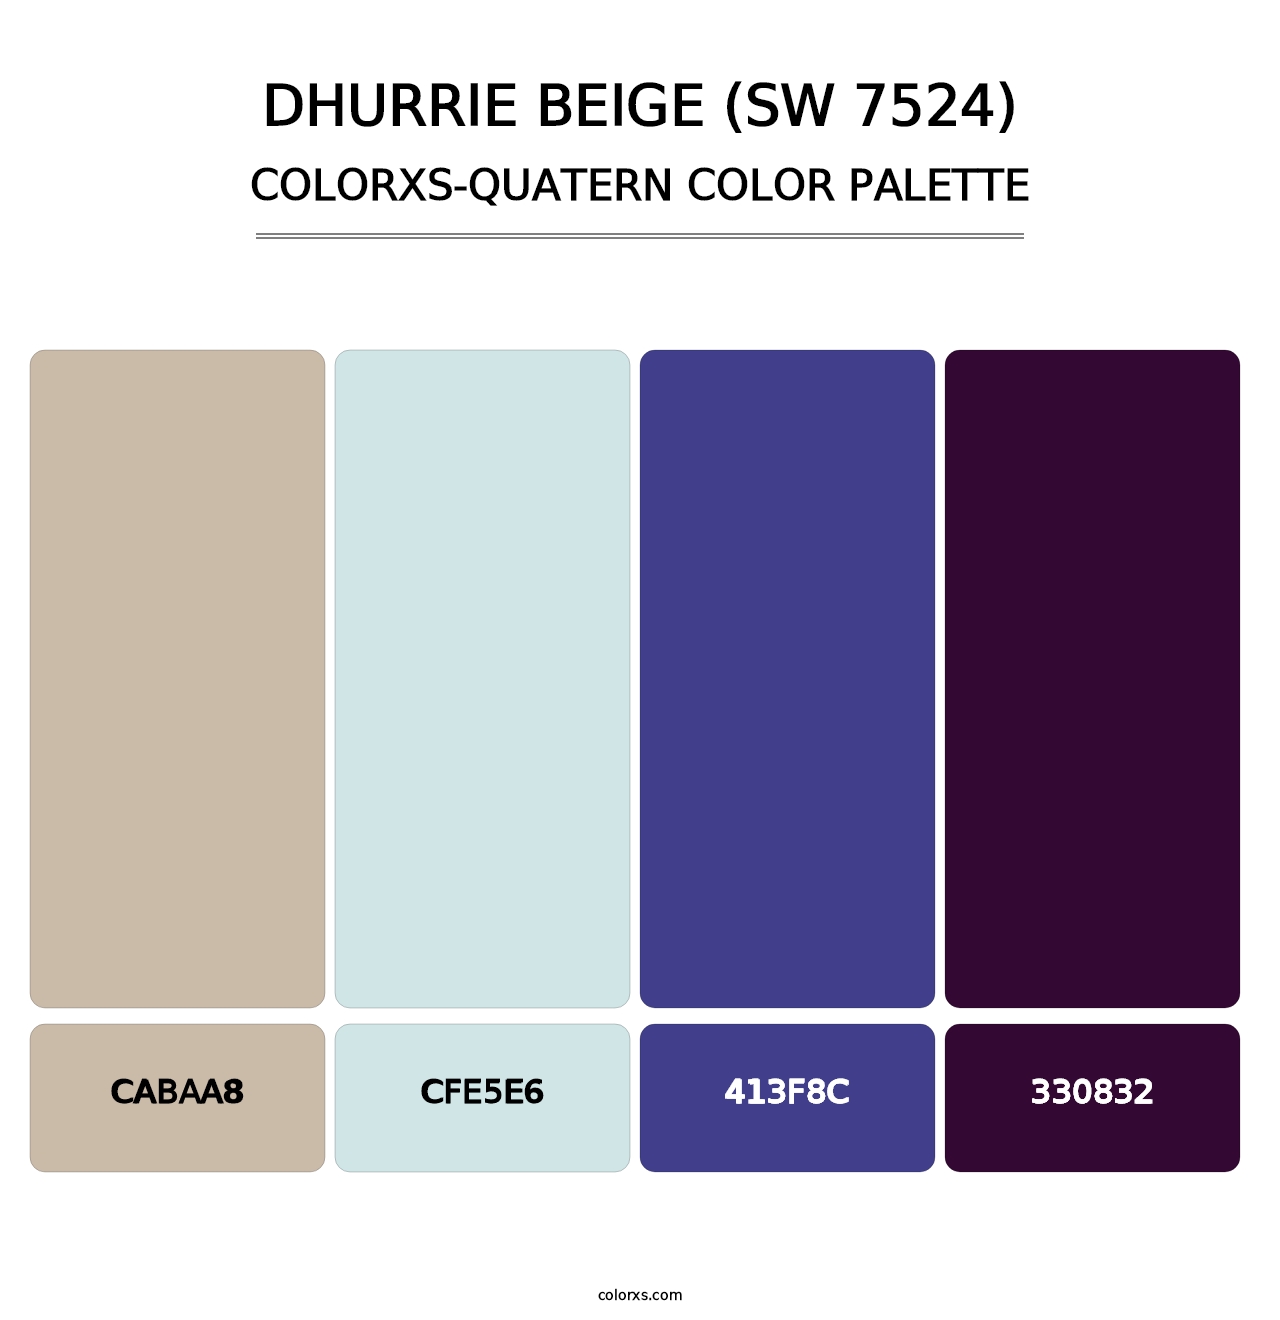 Dhurrie Beige (SW 7524) - Colorxs Quatern Palette